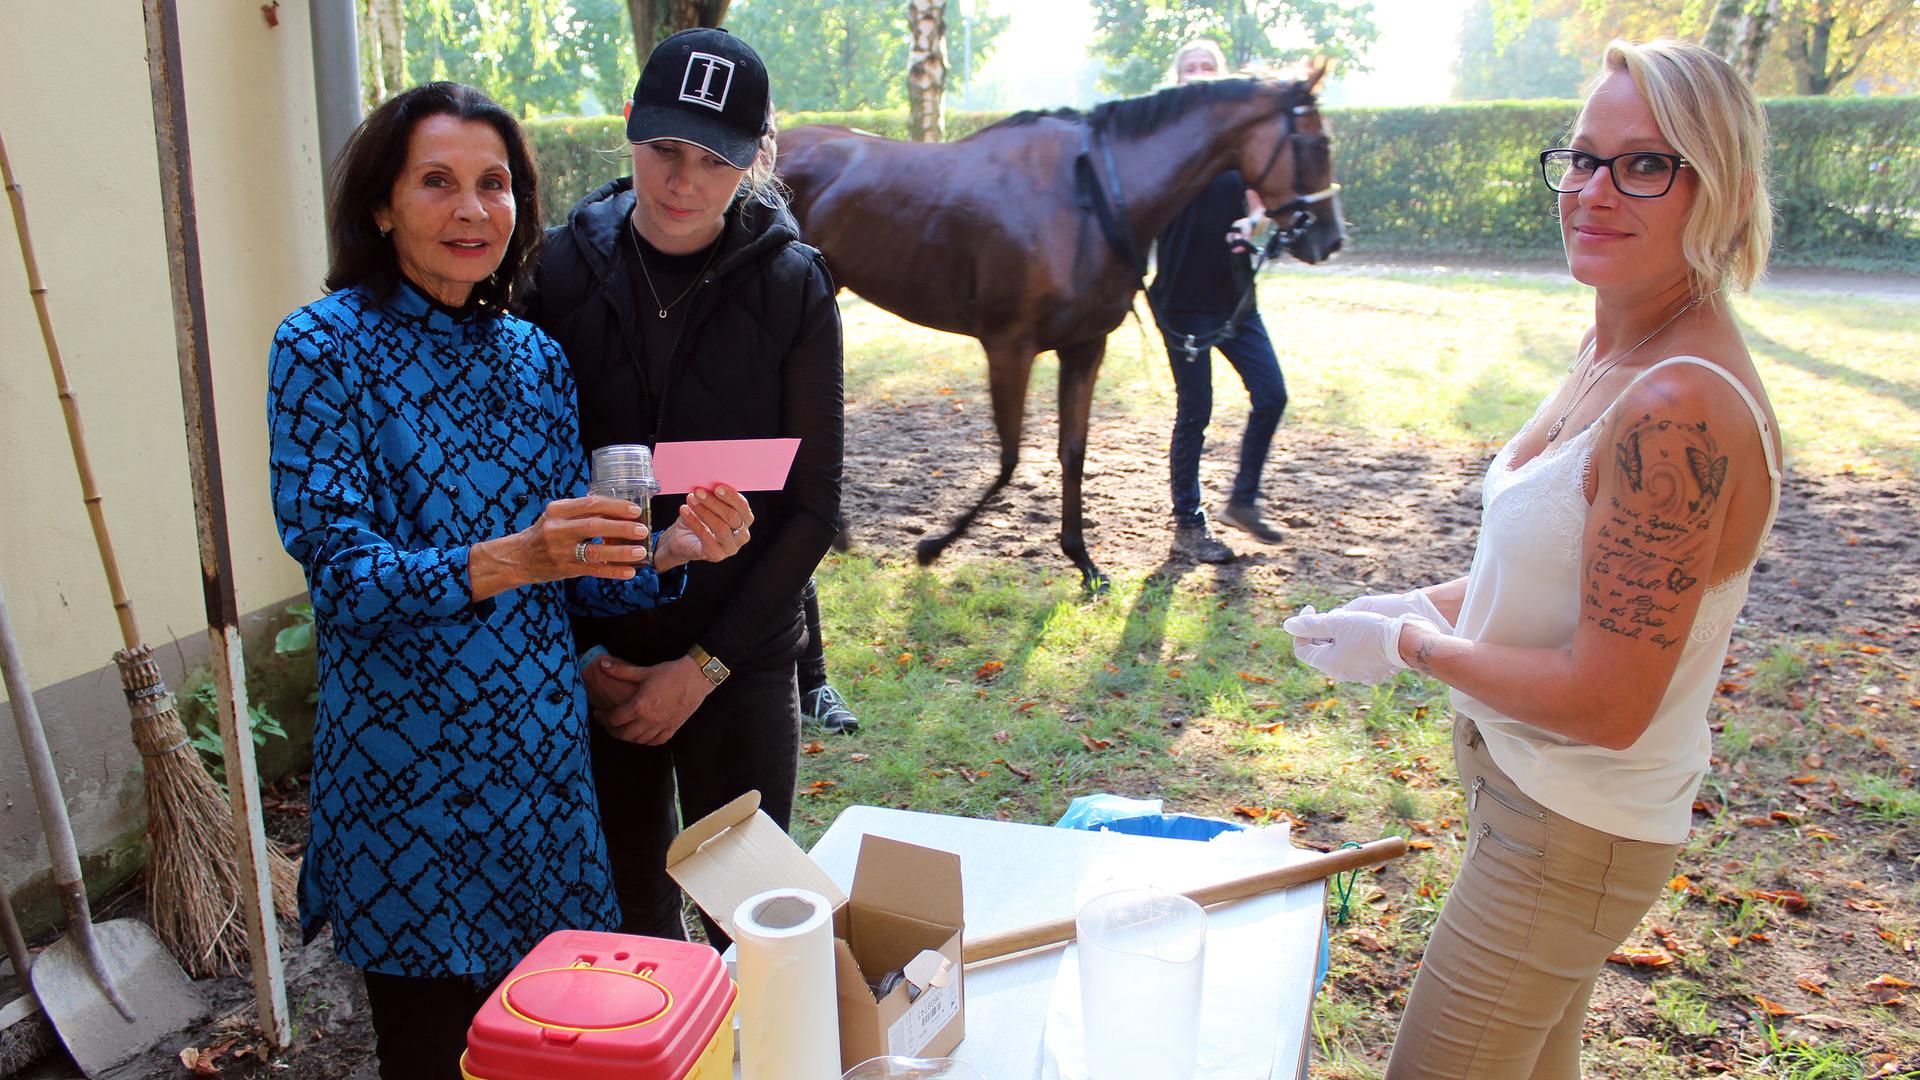 Als Dopingkontrolleure im Dauereinsatz: Karin Ortlieb (links) versiegelt im Beisein einer Pferdeführerin (Mitte) die Urinproben, die Entnehmerin Astrid Palau (rechs) dem zu überprüfenden Pferd entnommen hat.